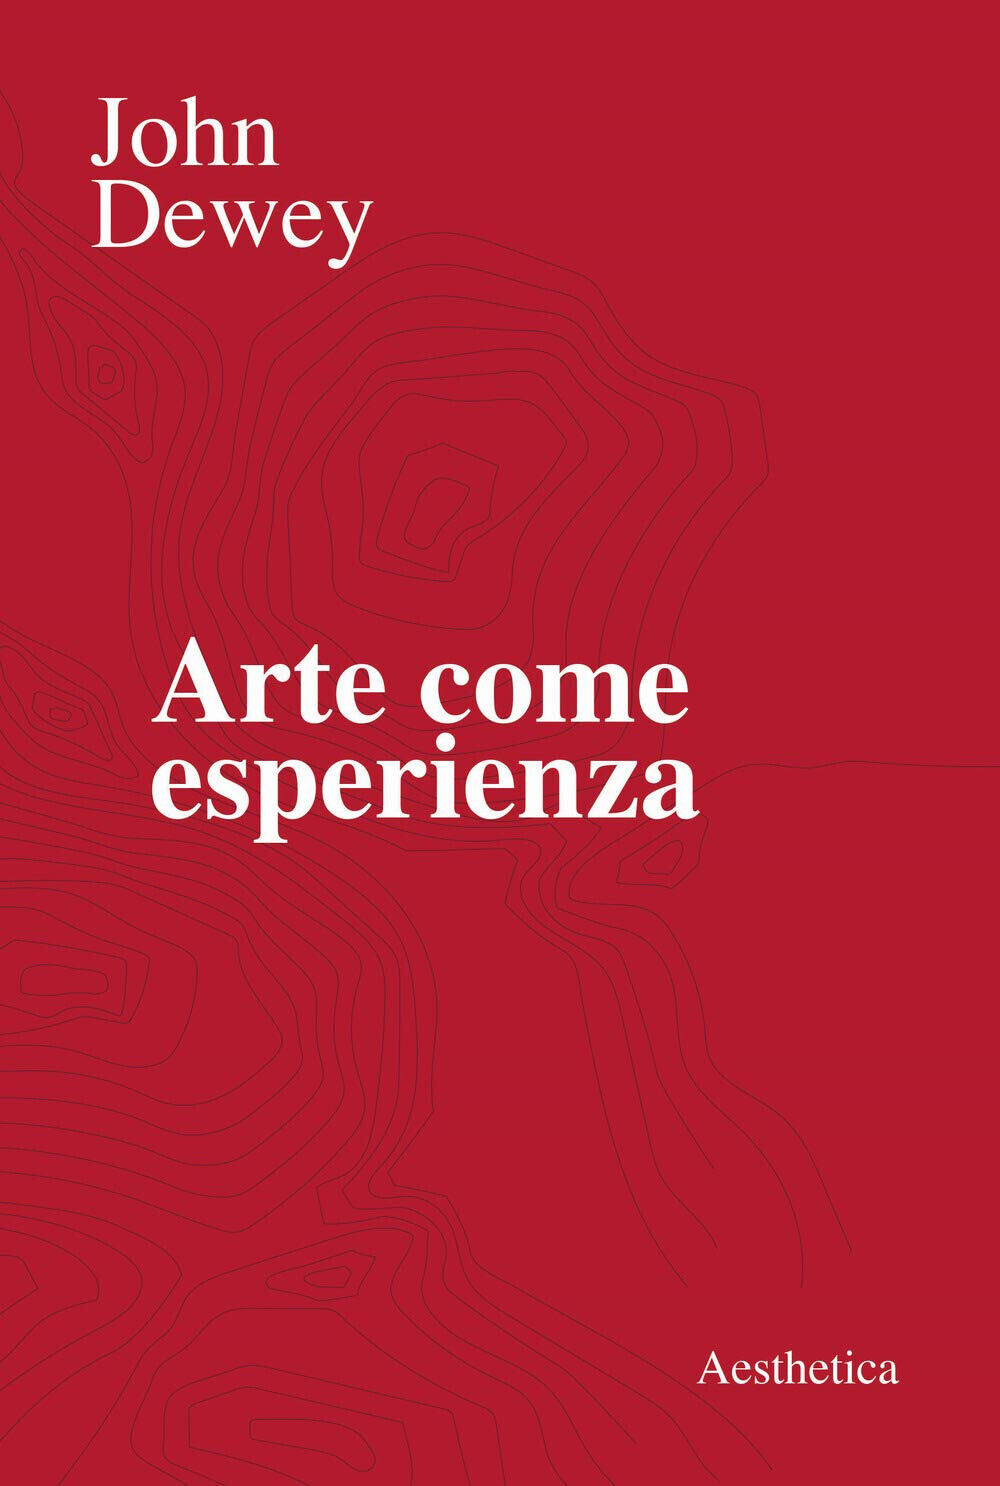 Arte come esperienza - John Dewey - Aesthetica, 2020 libro usato